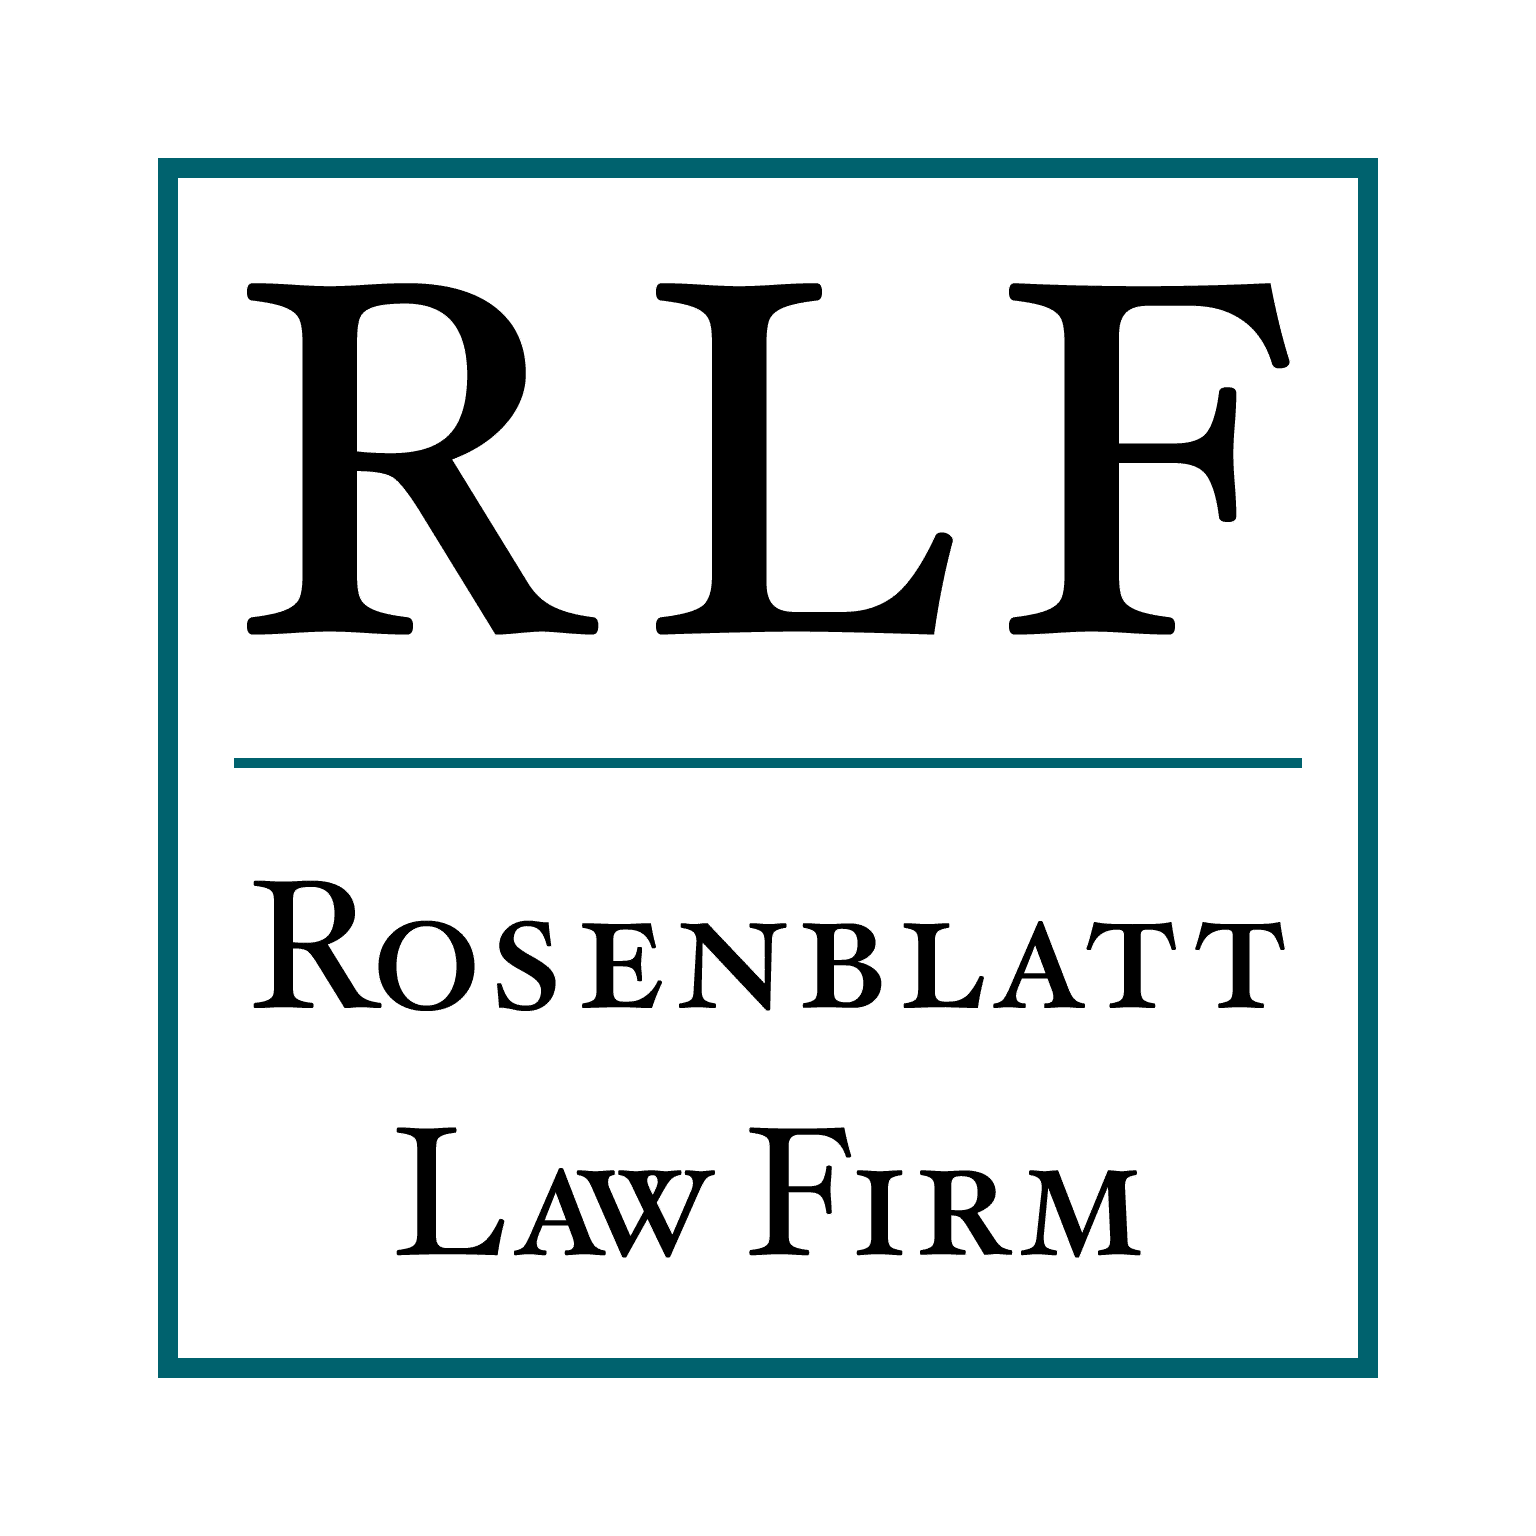 Rosenblatt Law Firm logo